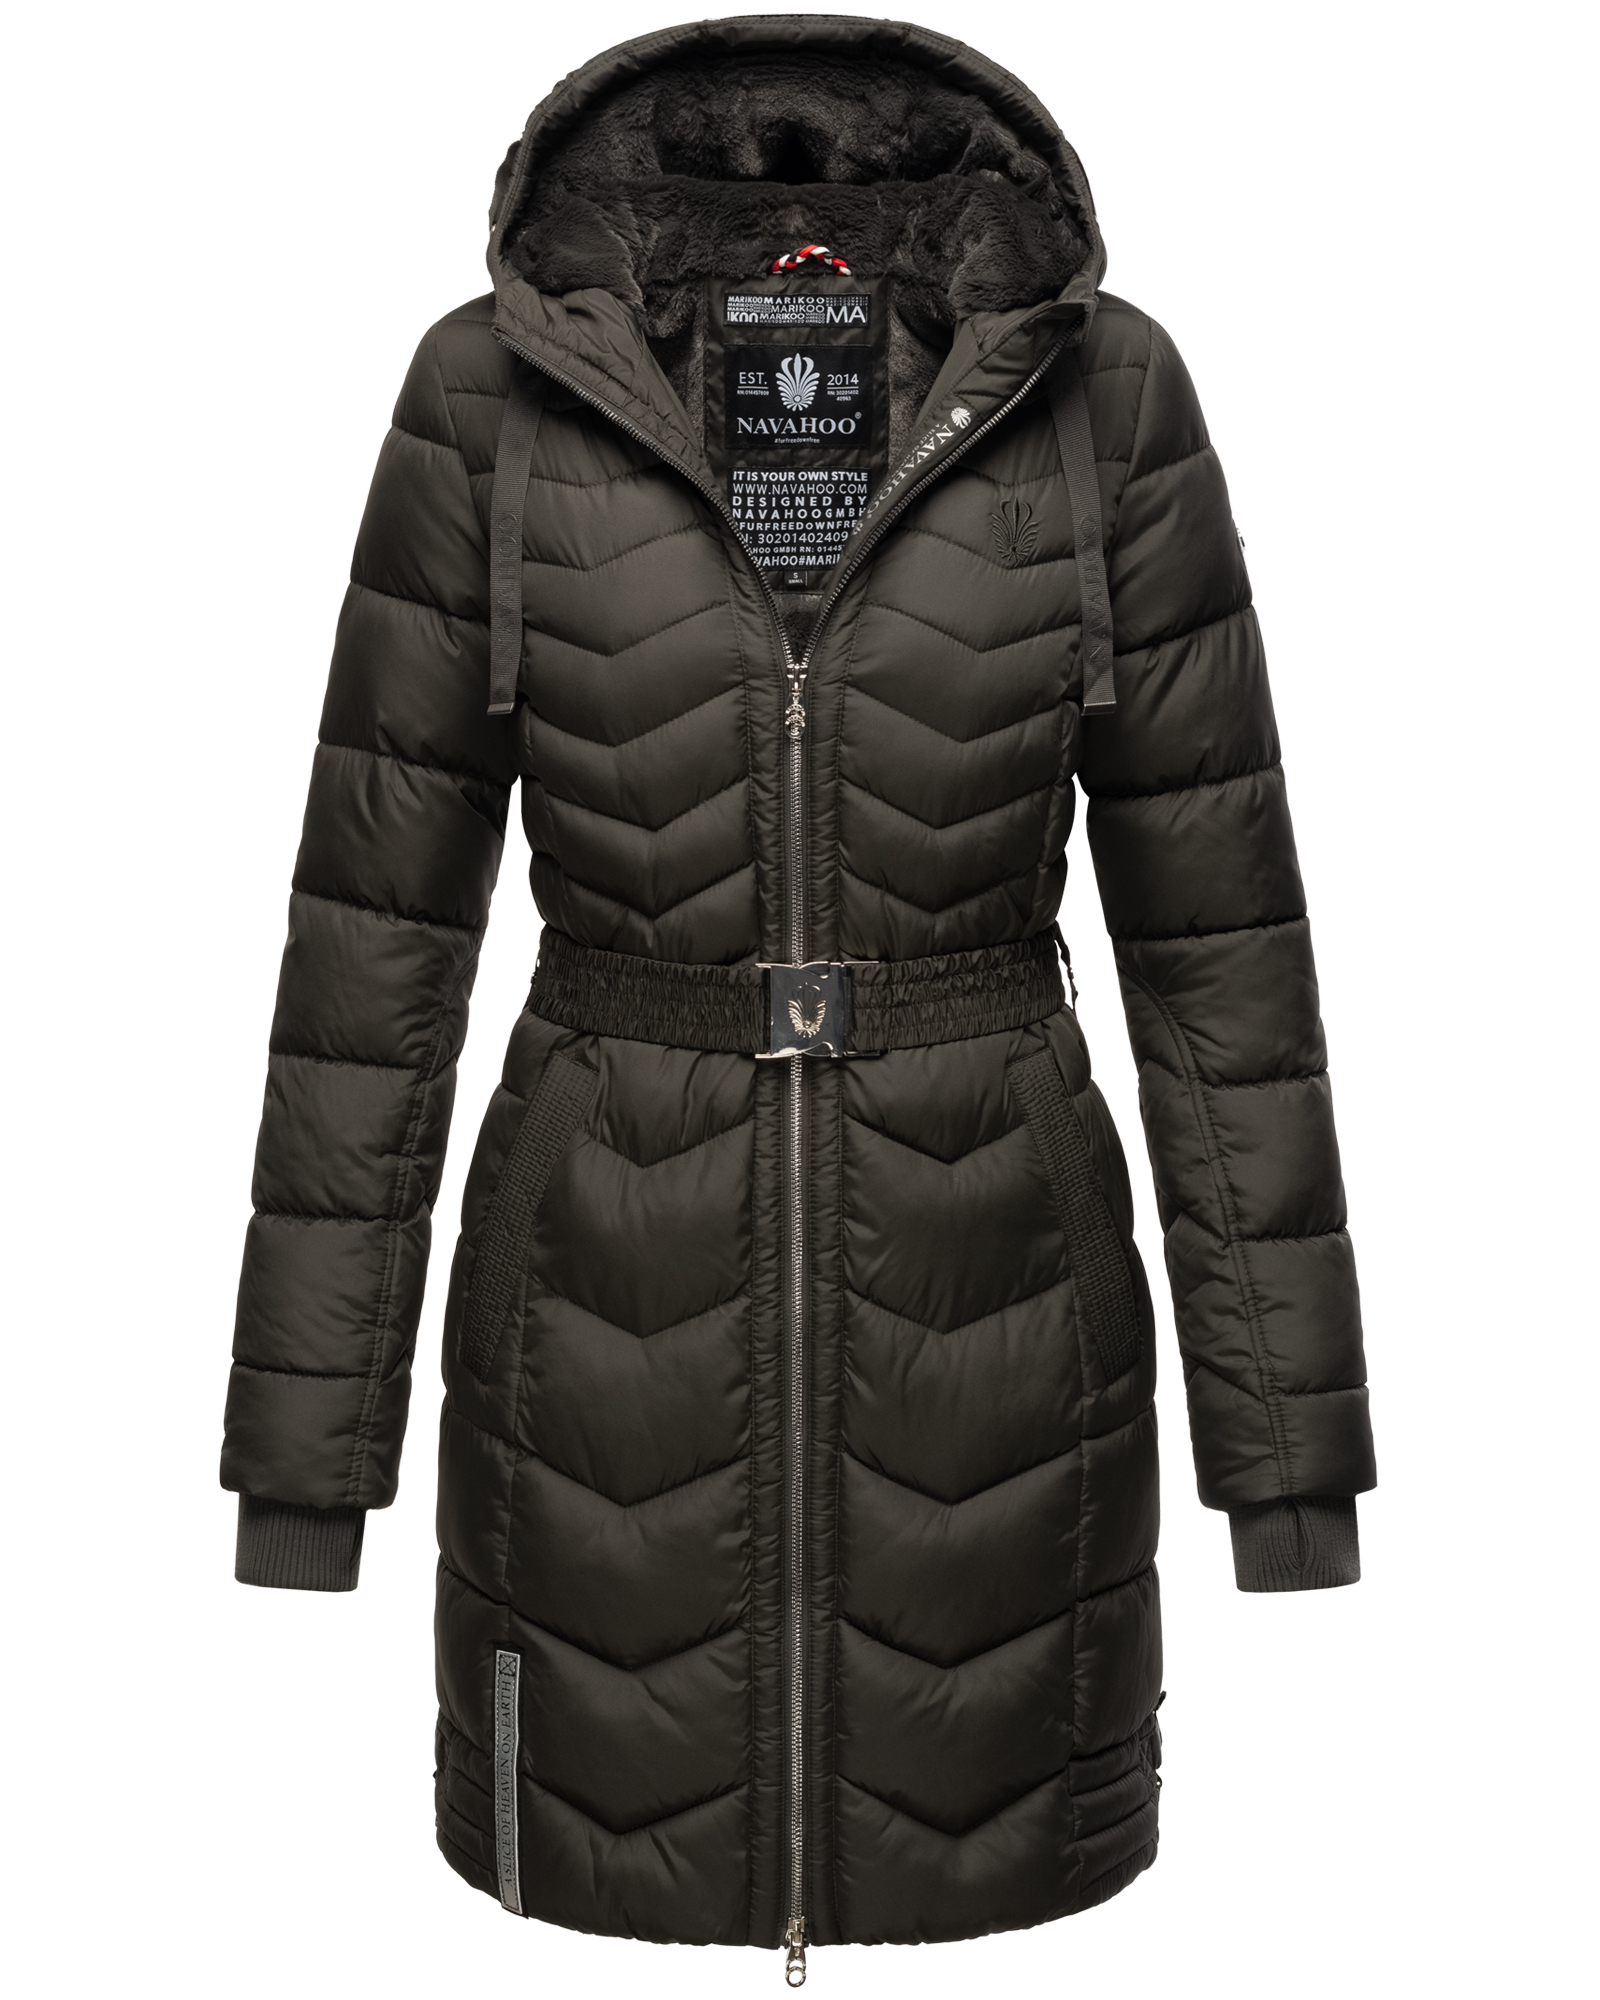 Dámský zimní prošívaný kabát Alpenveilchen Navahoo - ANTRACITE Velikost: XXL